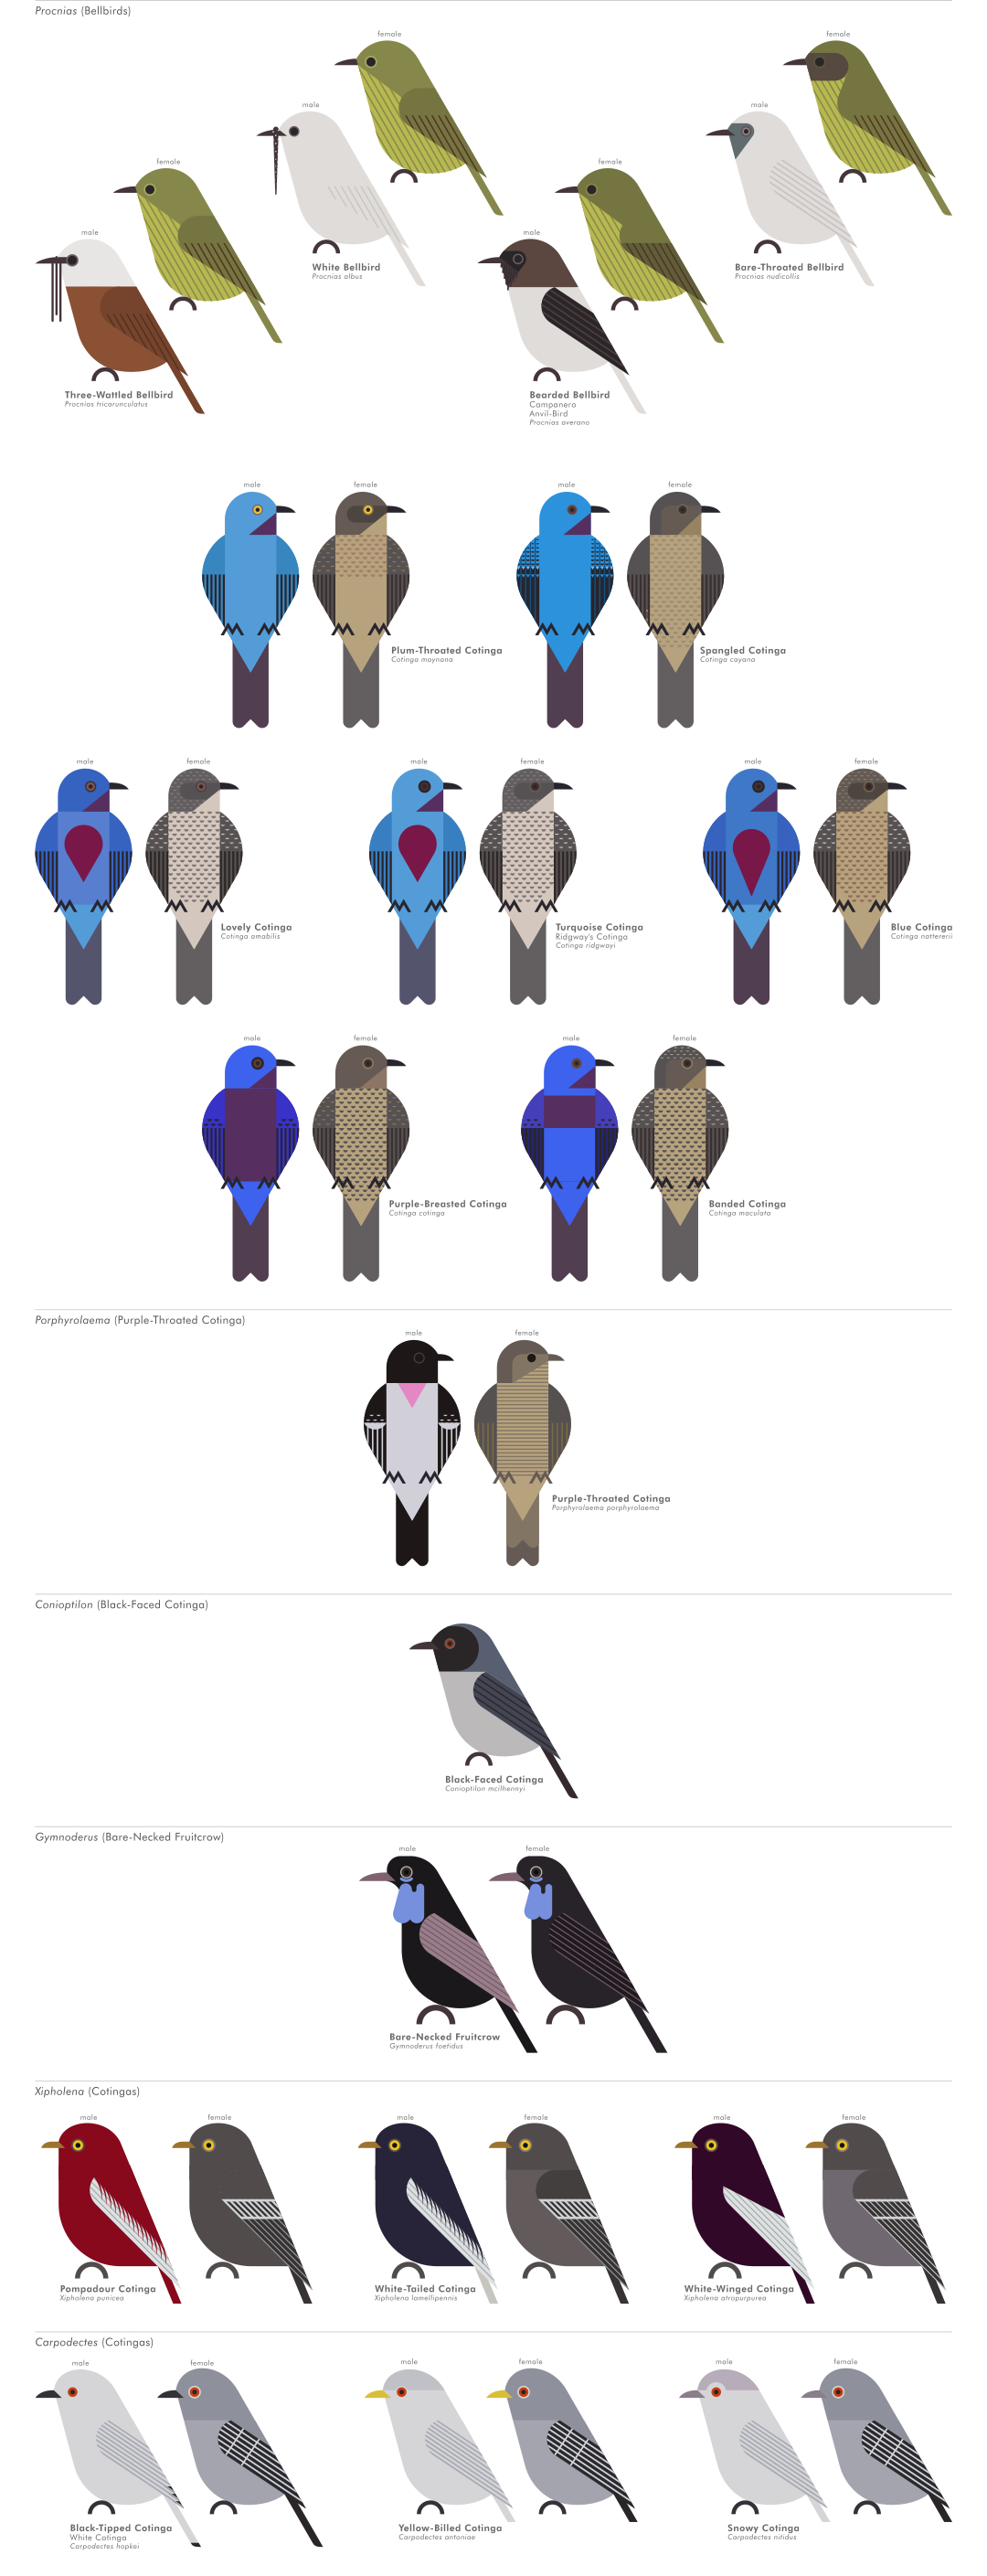 scott partridge - AVE - avian vector encyclopedia - cotingas - bird vector art